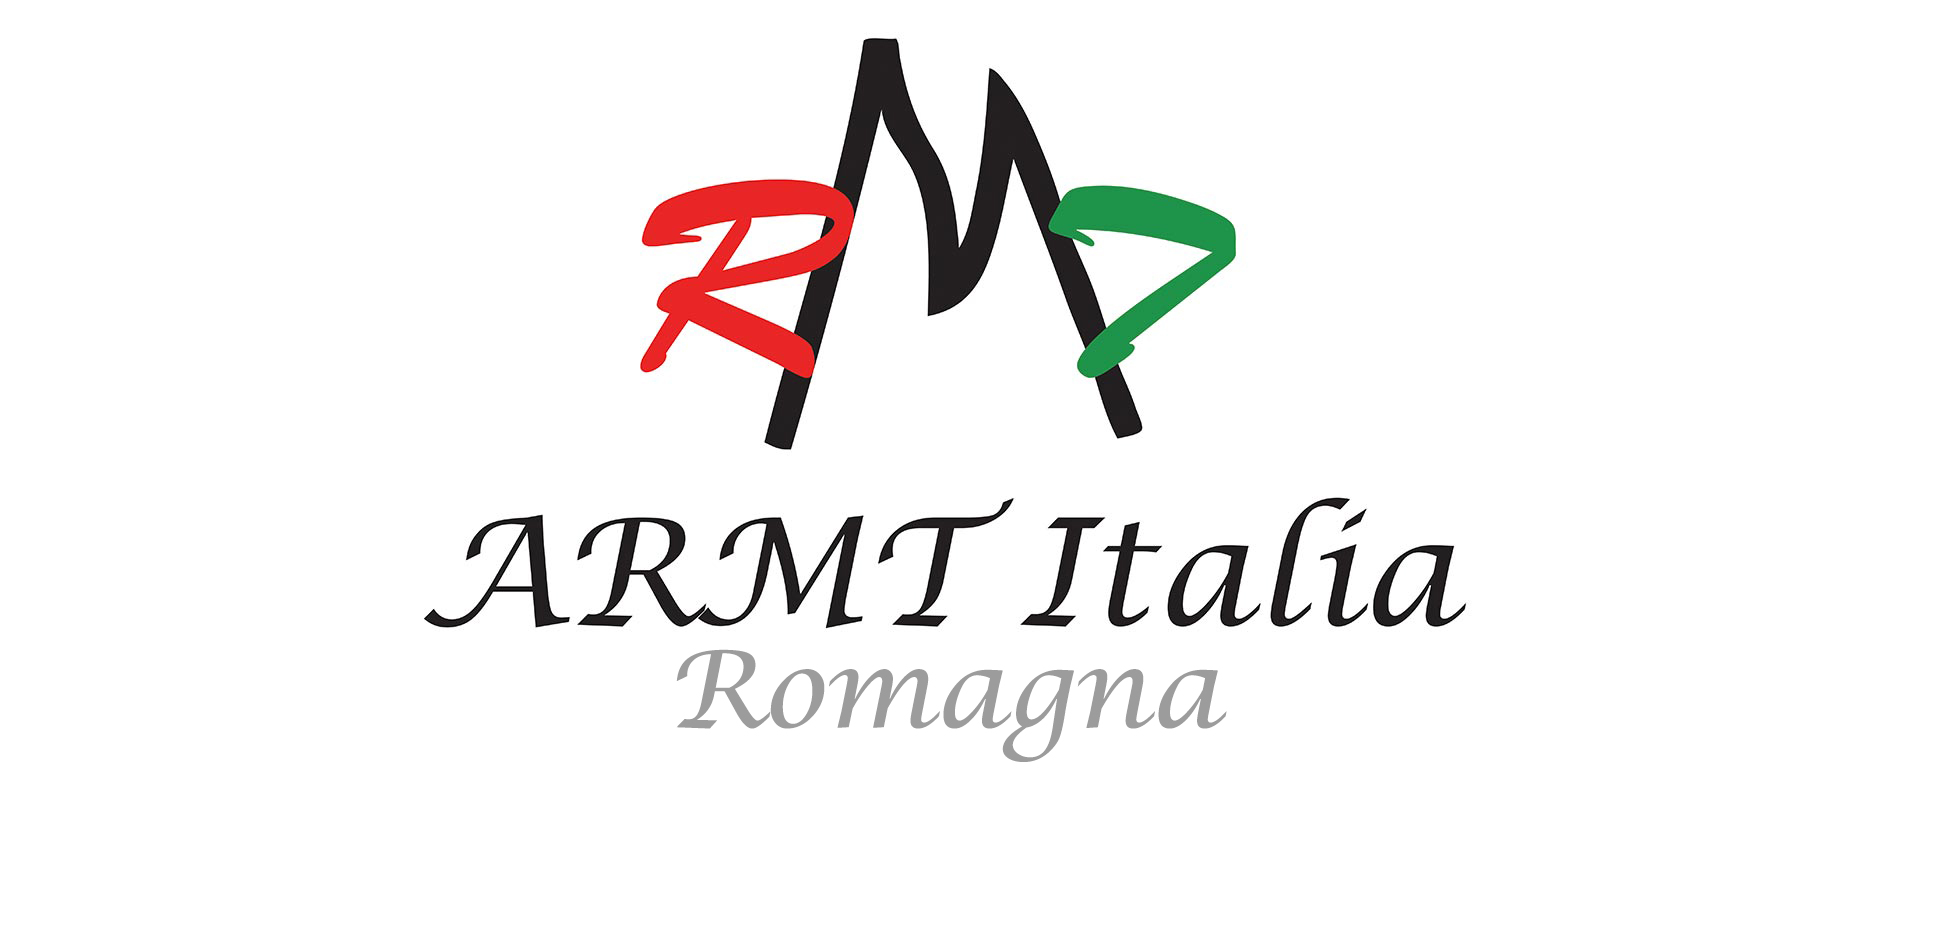 ARMT Italia (Romagna)